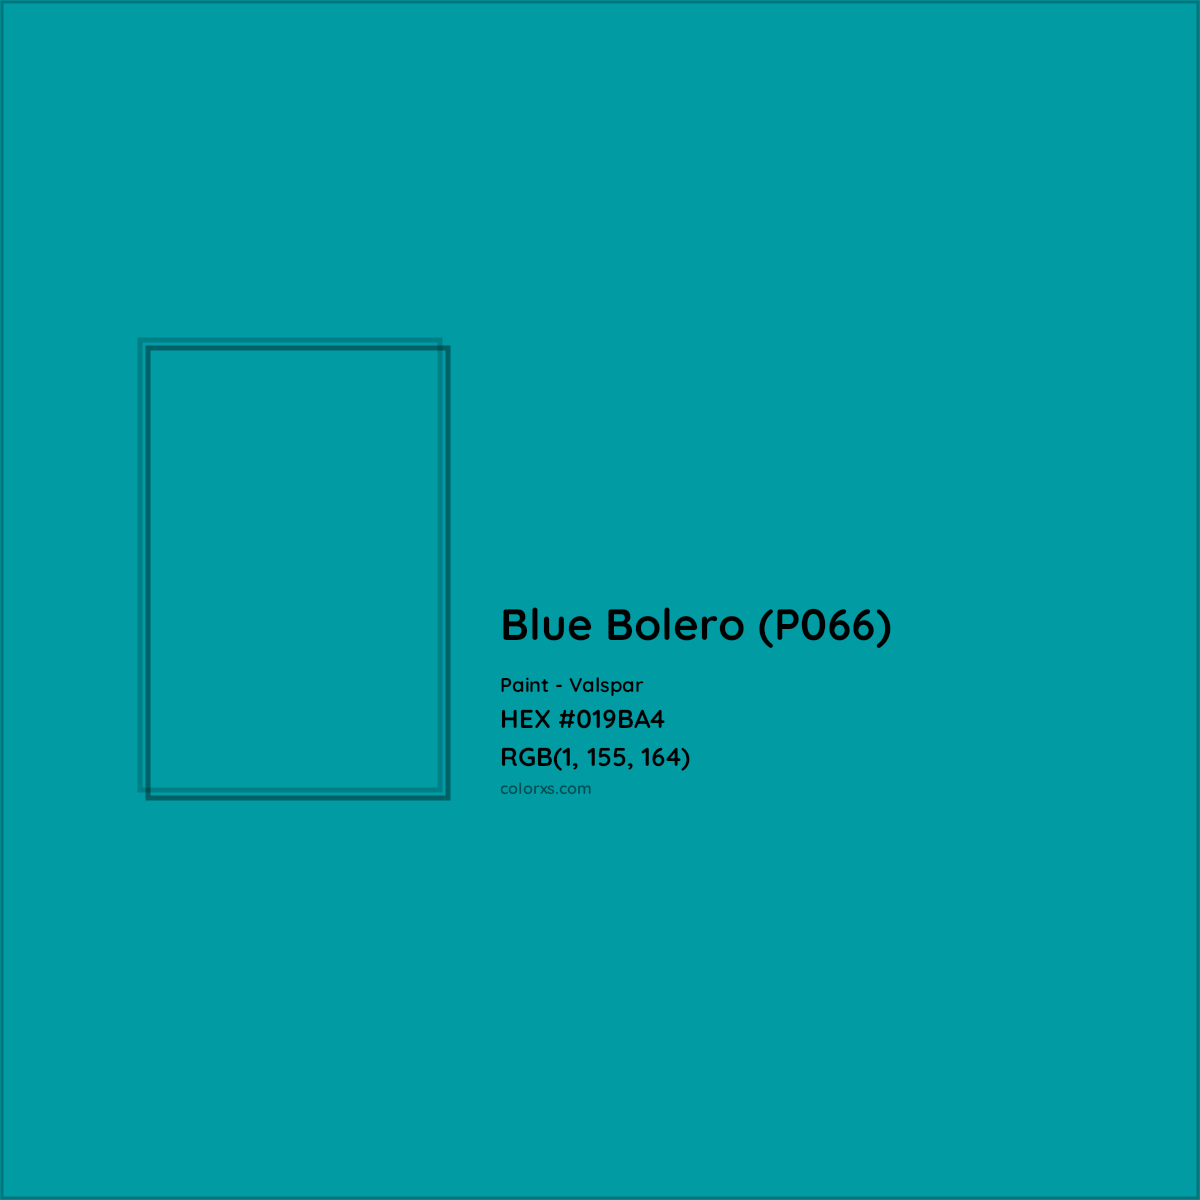 HEX #019BA4 Blue Bolero (P066) Paint Valspar - Color Code